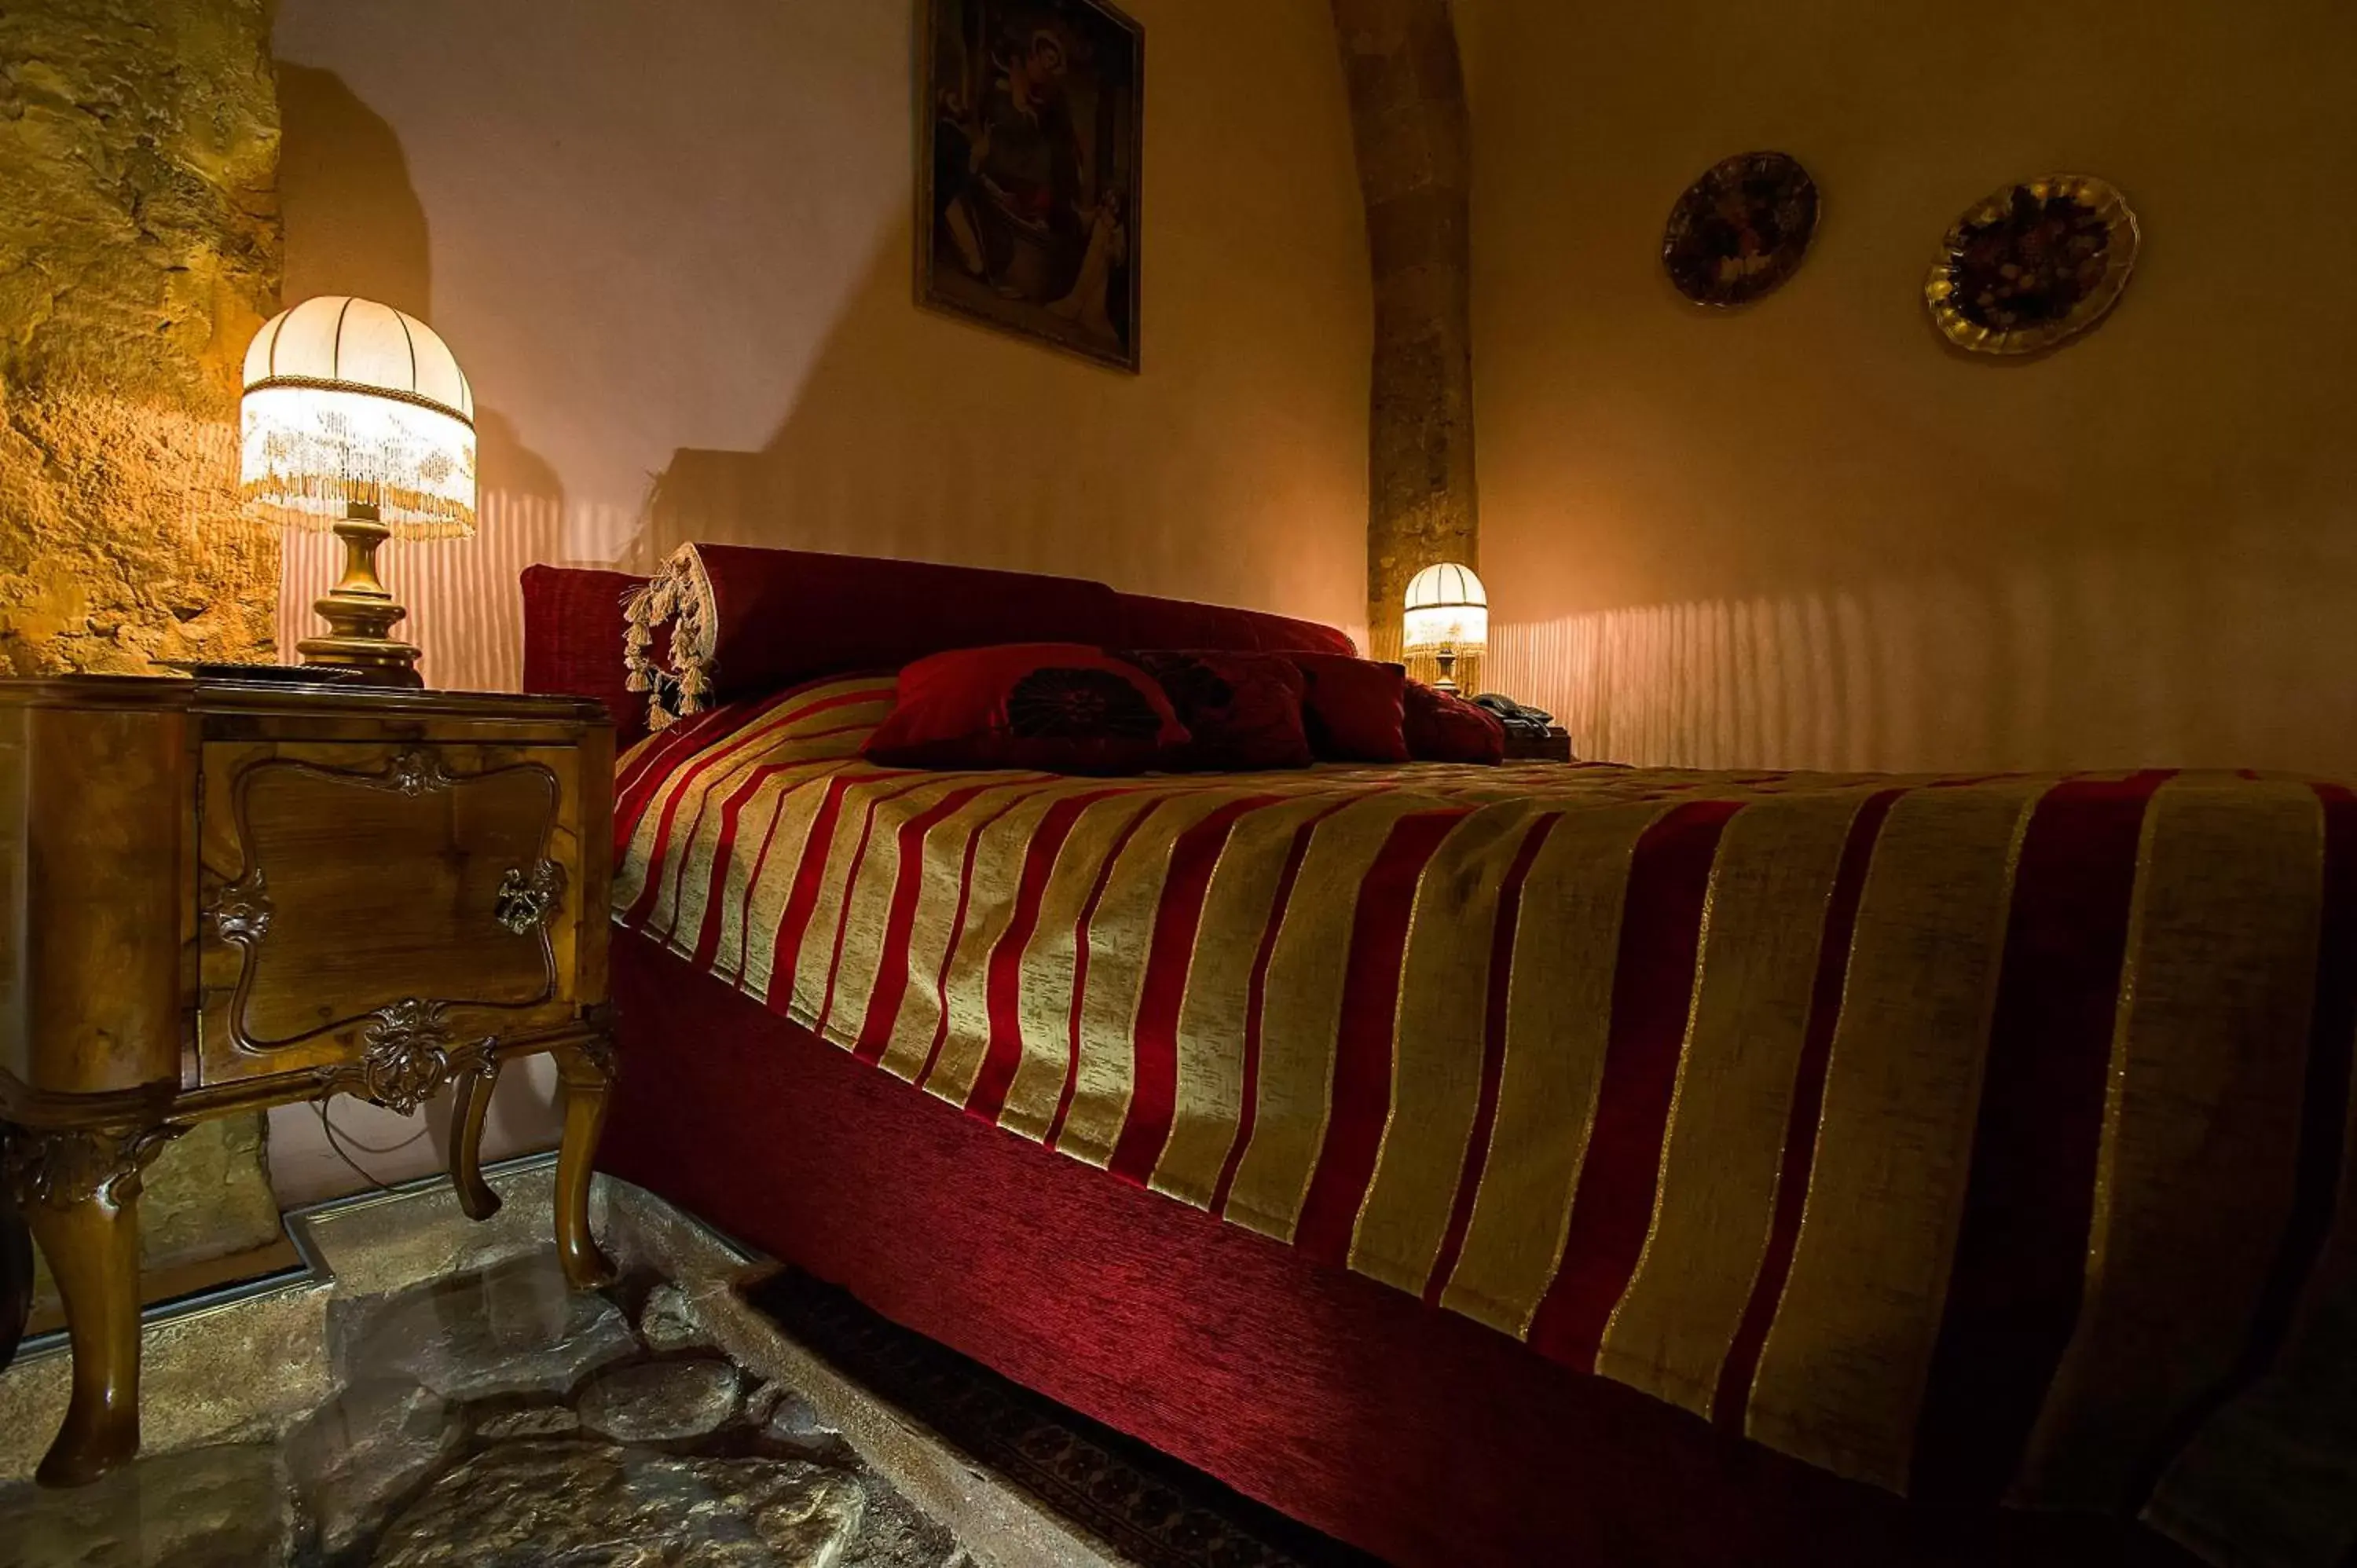 Bed in Meliaresort Dimore Storiche